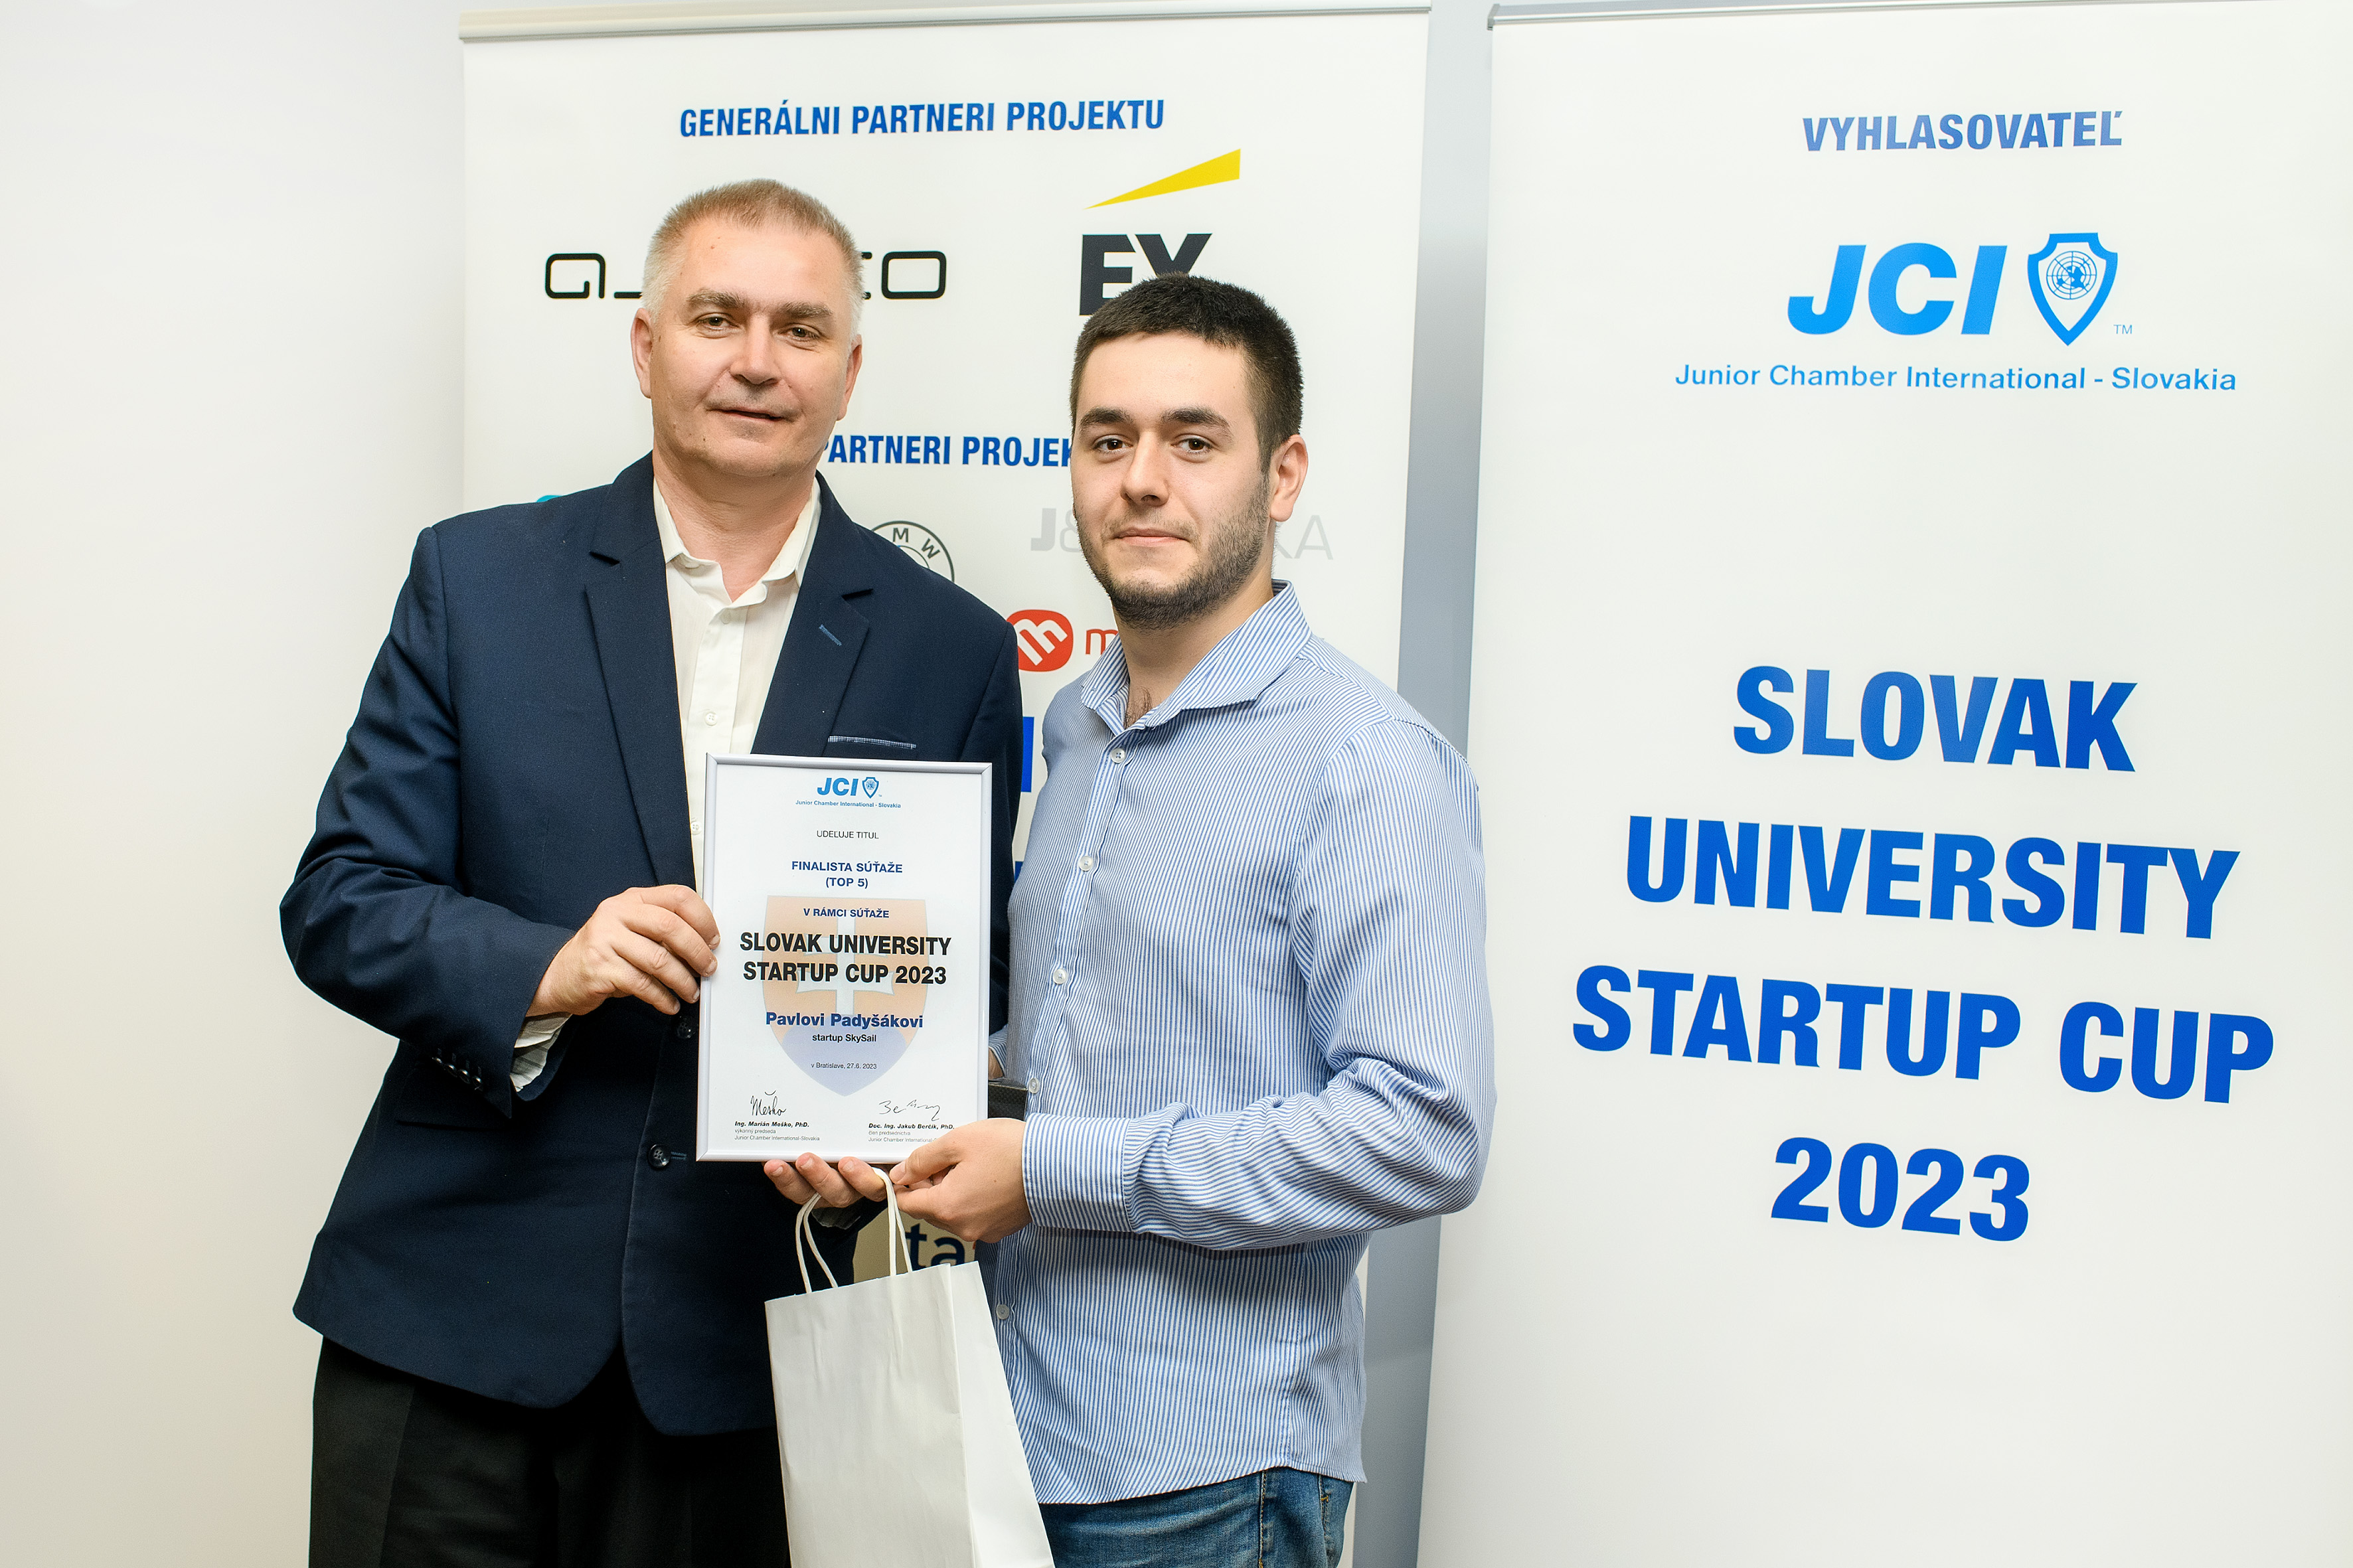 Slovak University Startup Cup 2023